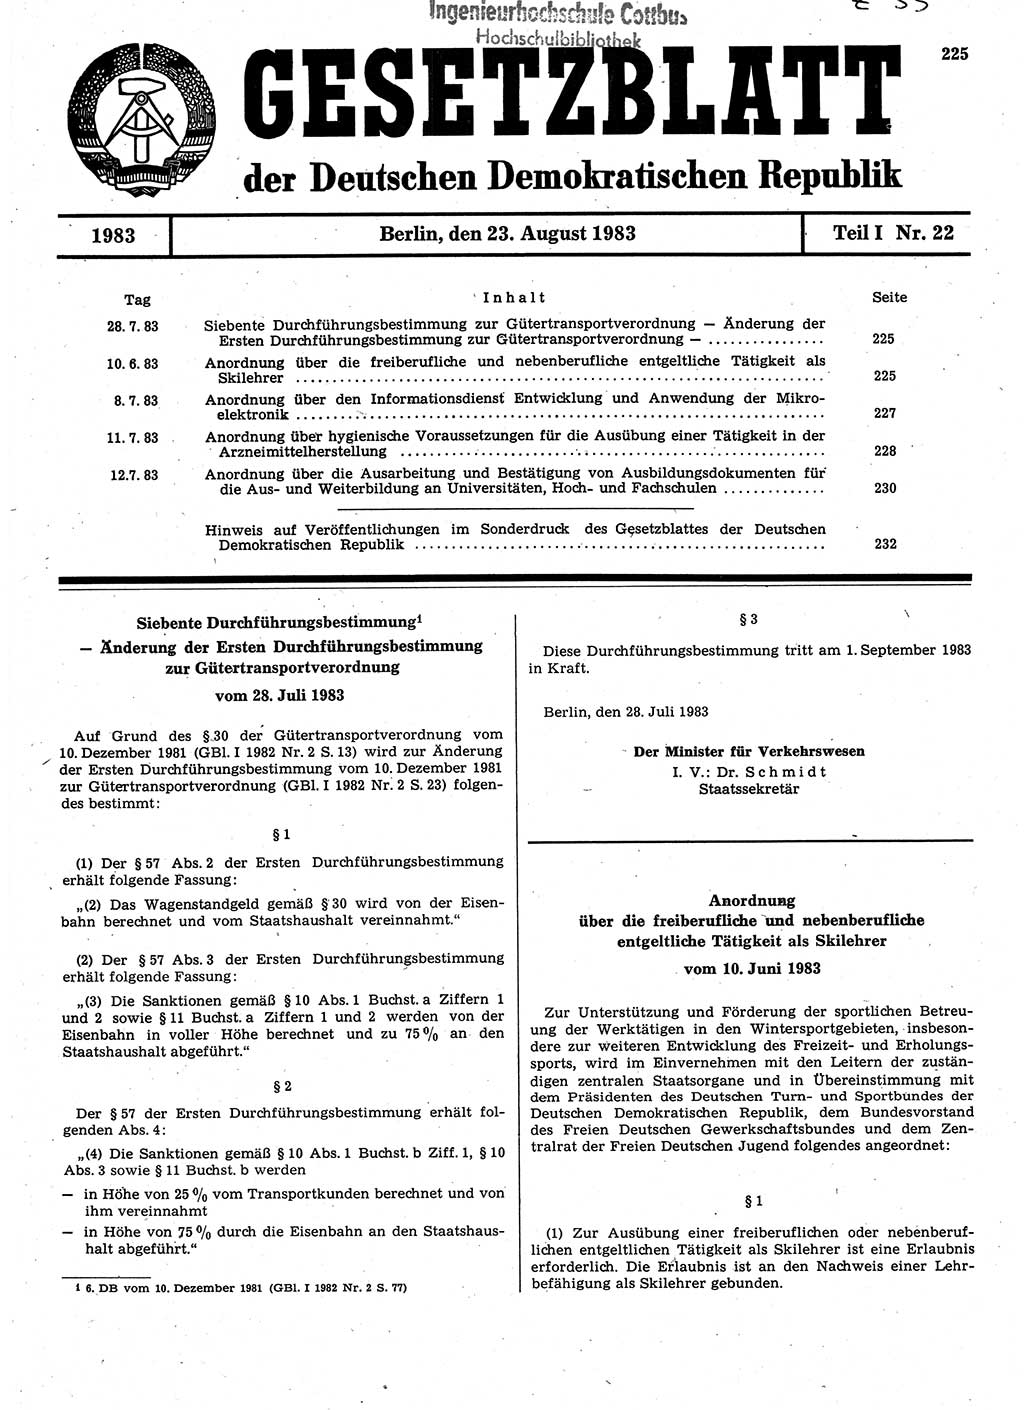 Gesetzblatt (GBl.) der Deutschen Demokratischen Republik (DDR) Teil Ⅰ 1983, Seite 225 (GBl. DDR Ⅰ 1983, S. 225)